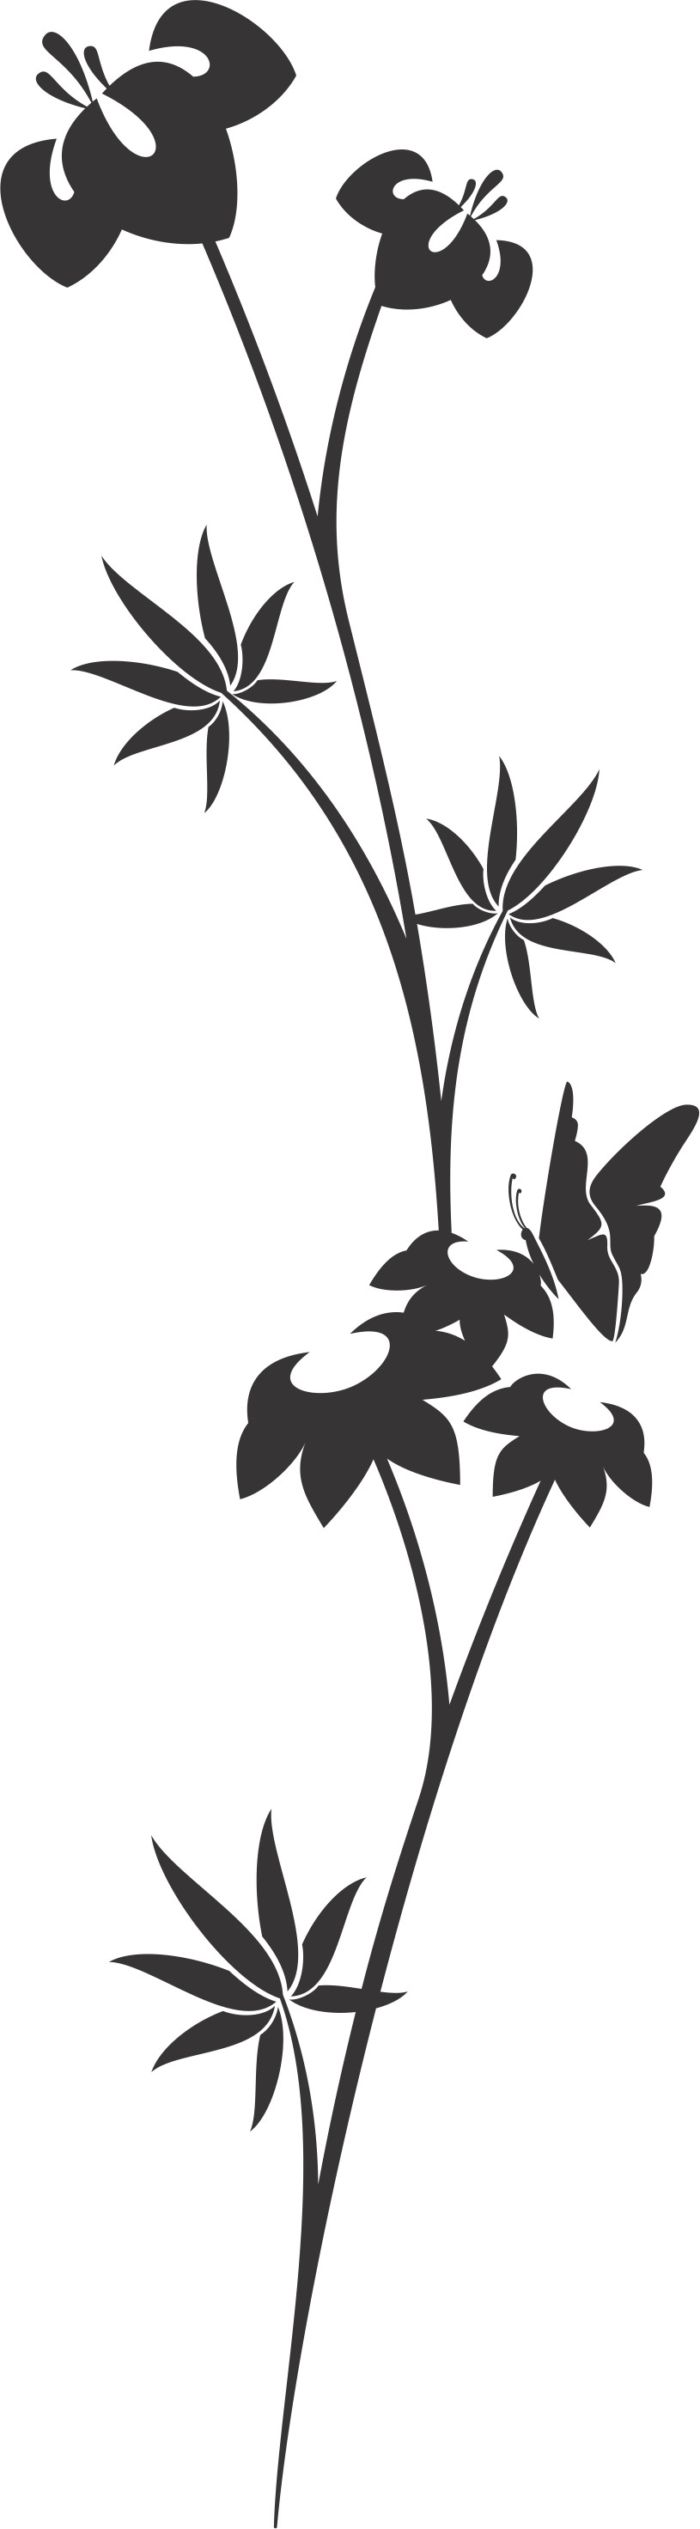 Decorative Floral Ornament Plant Stencil Free DXF File